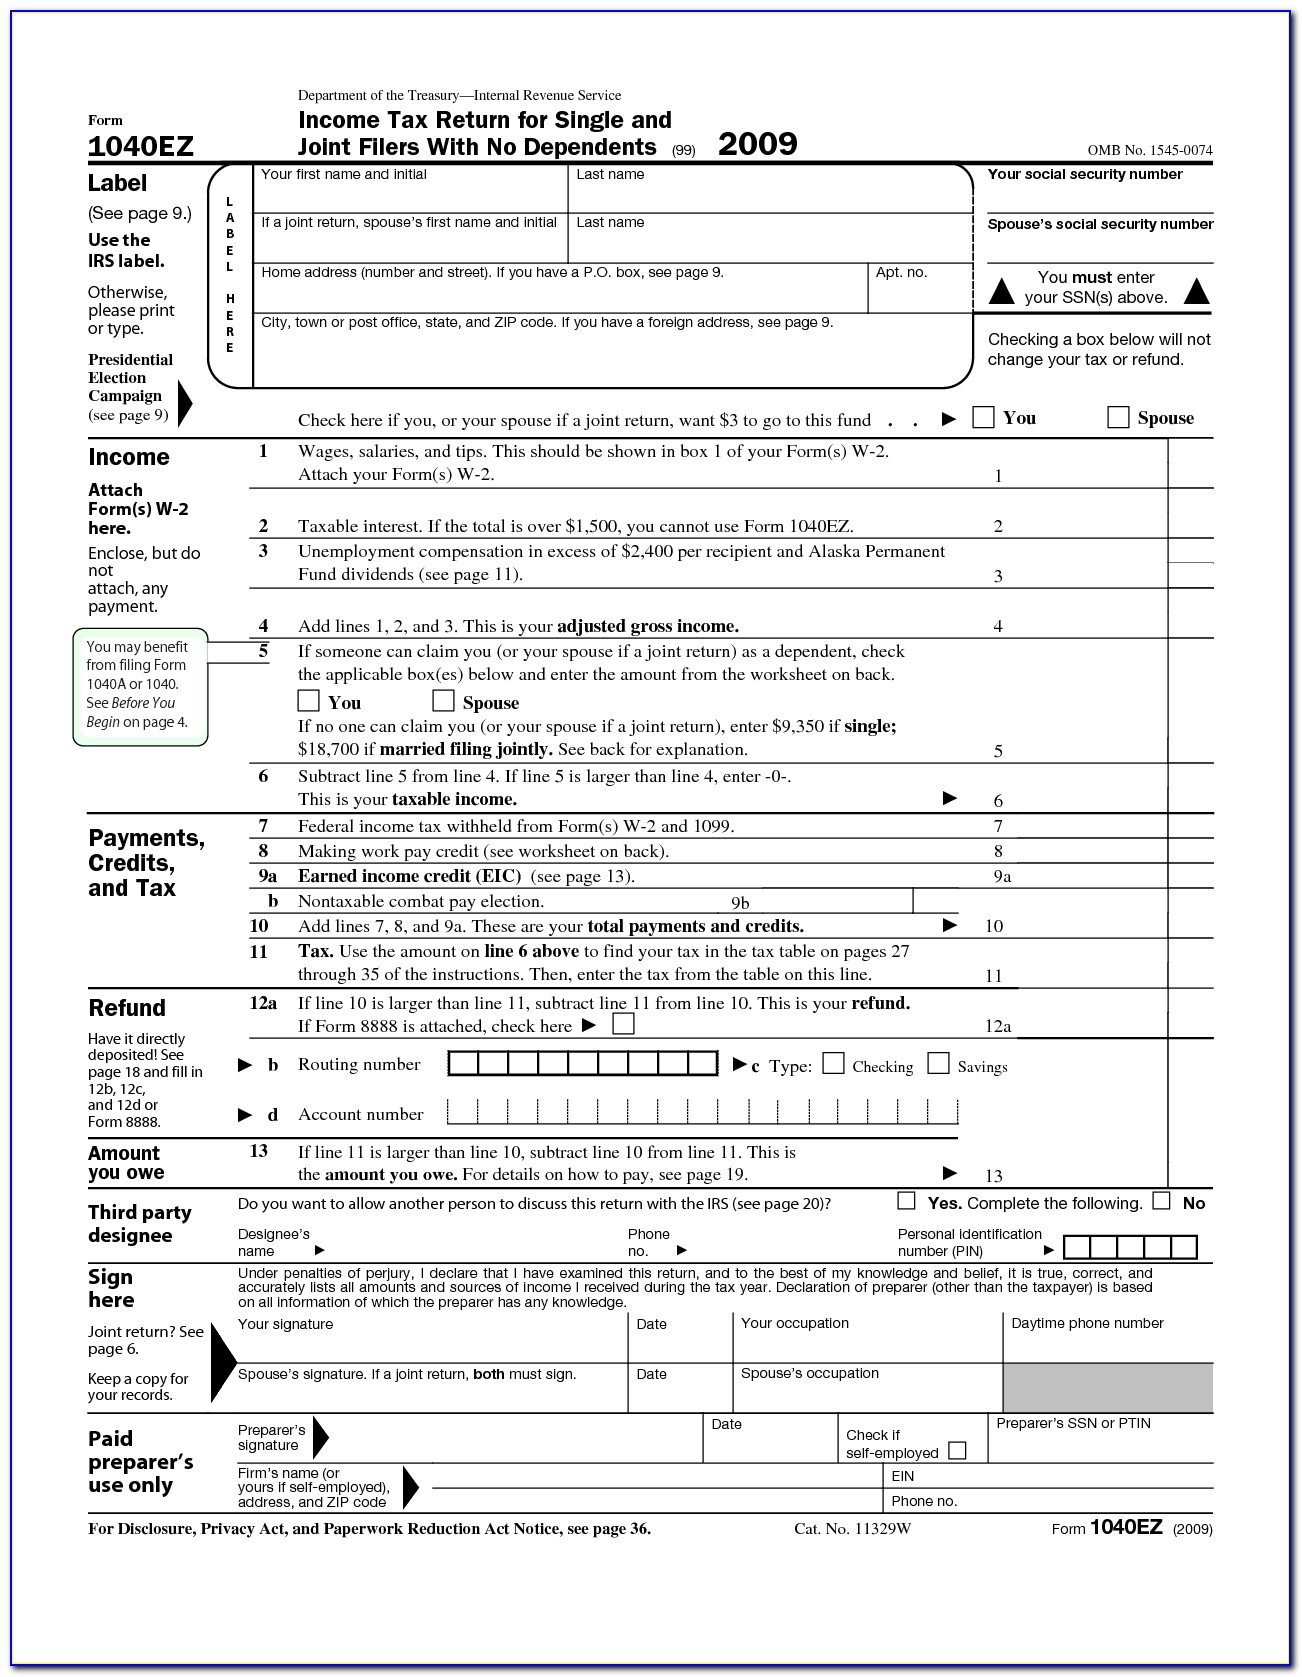 2014 Ohio Tax Form 1040ez